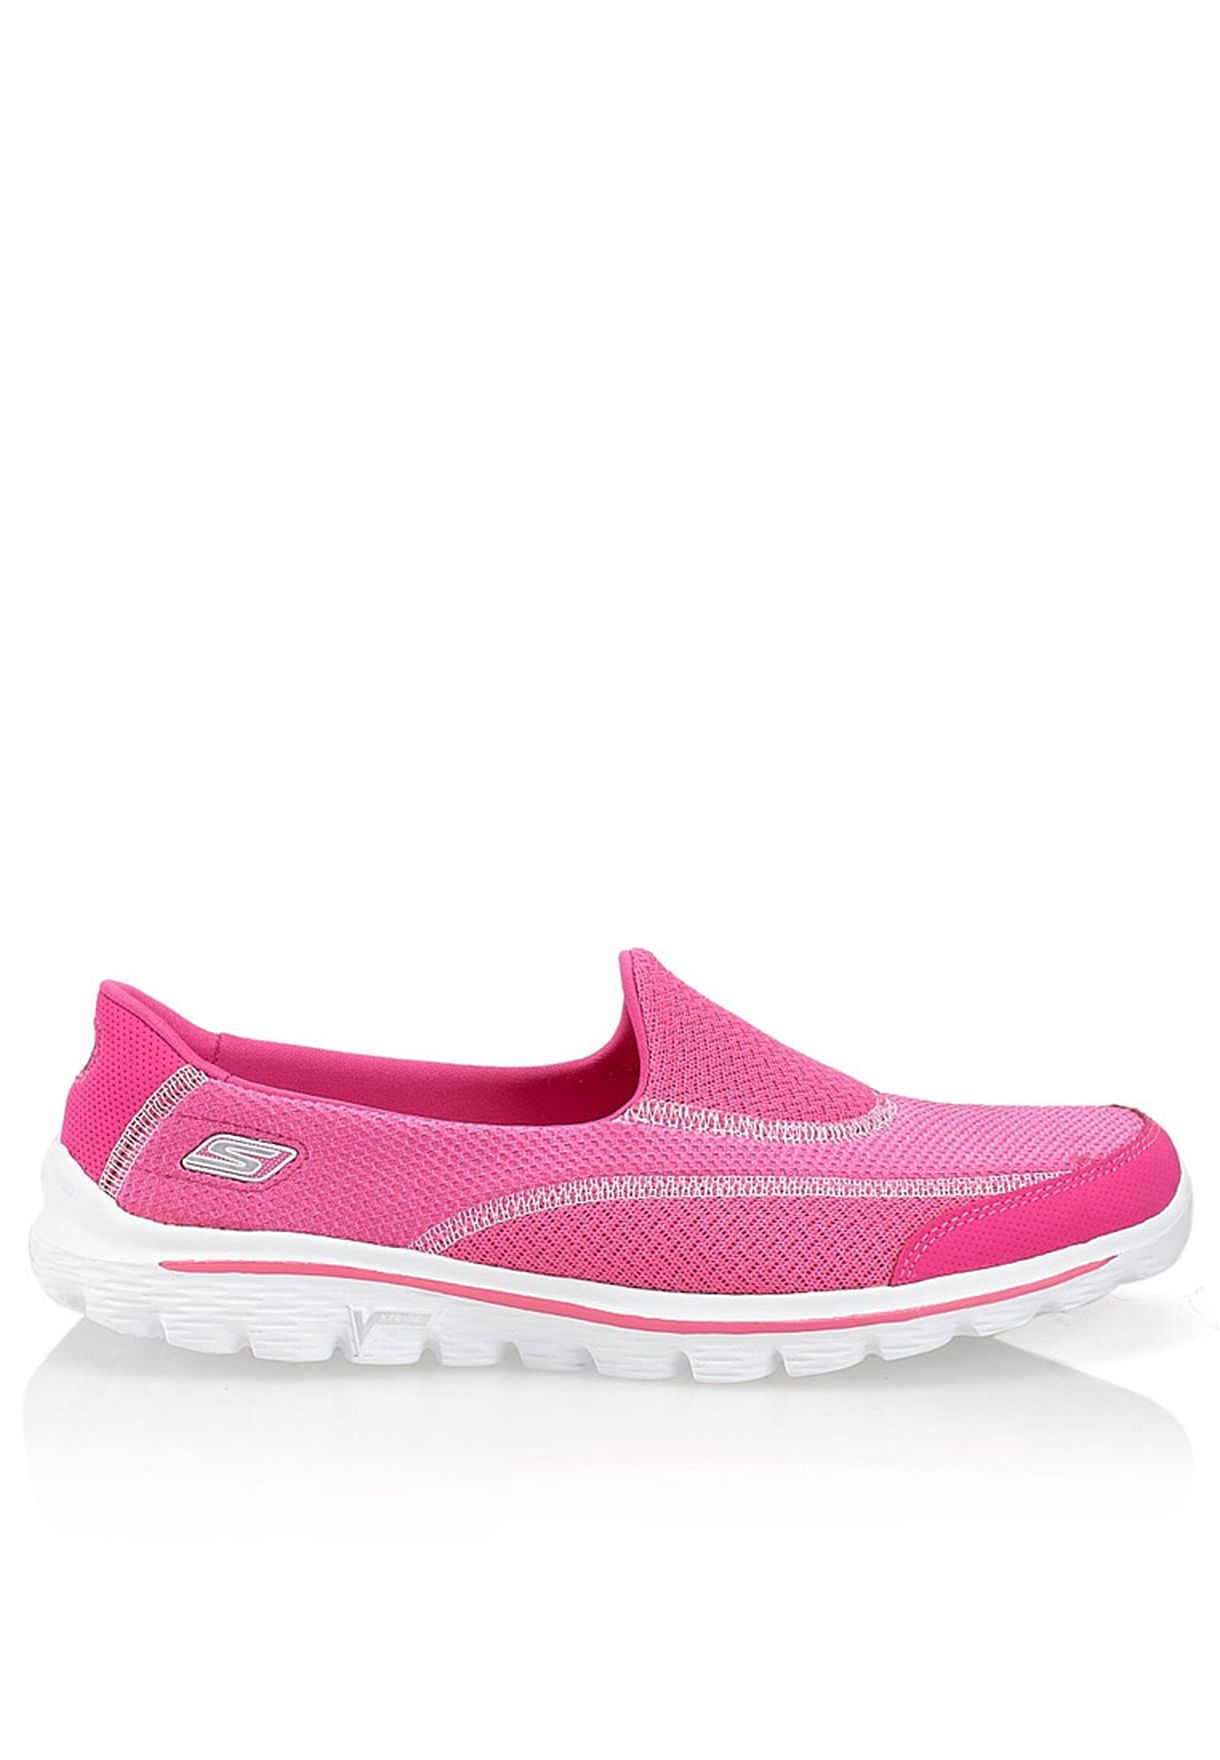 Buy Skechers pink Go Walk 2s for Women 